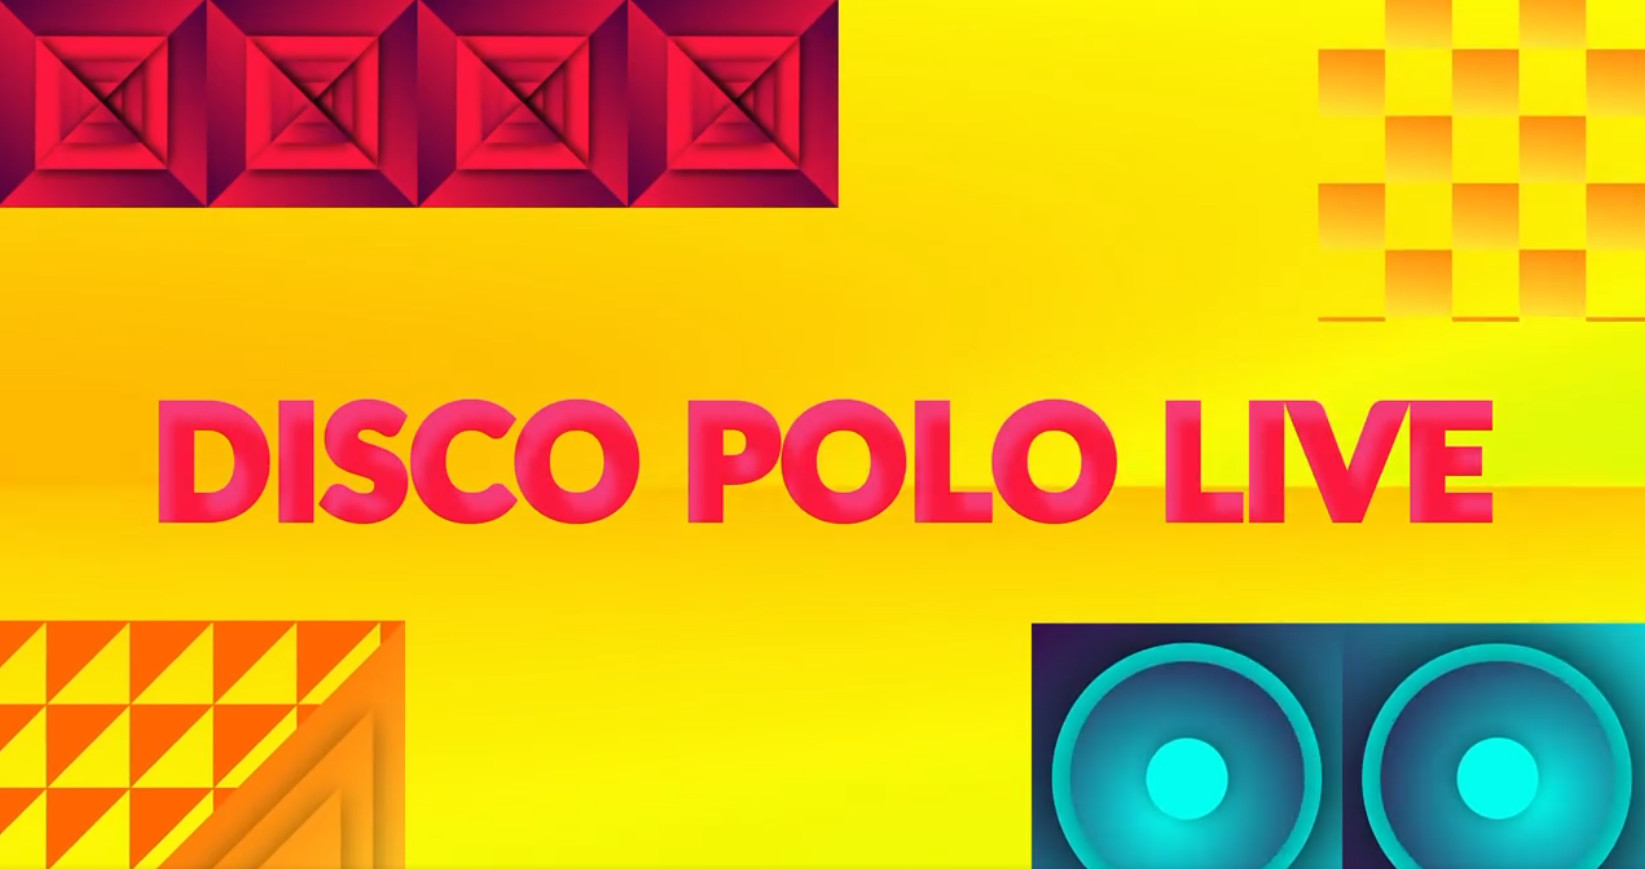 Powraca ukochany program Disco Polo Live! Znamy datę EMISJI nowego odcinka! Czym zaskoczy prowadzący?! 